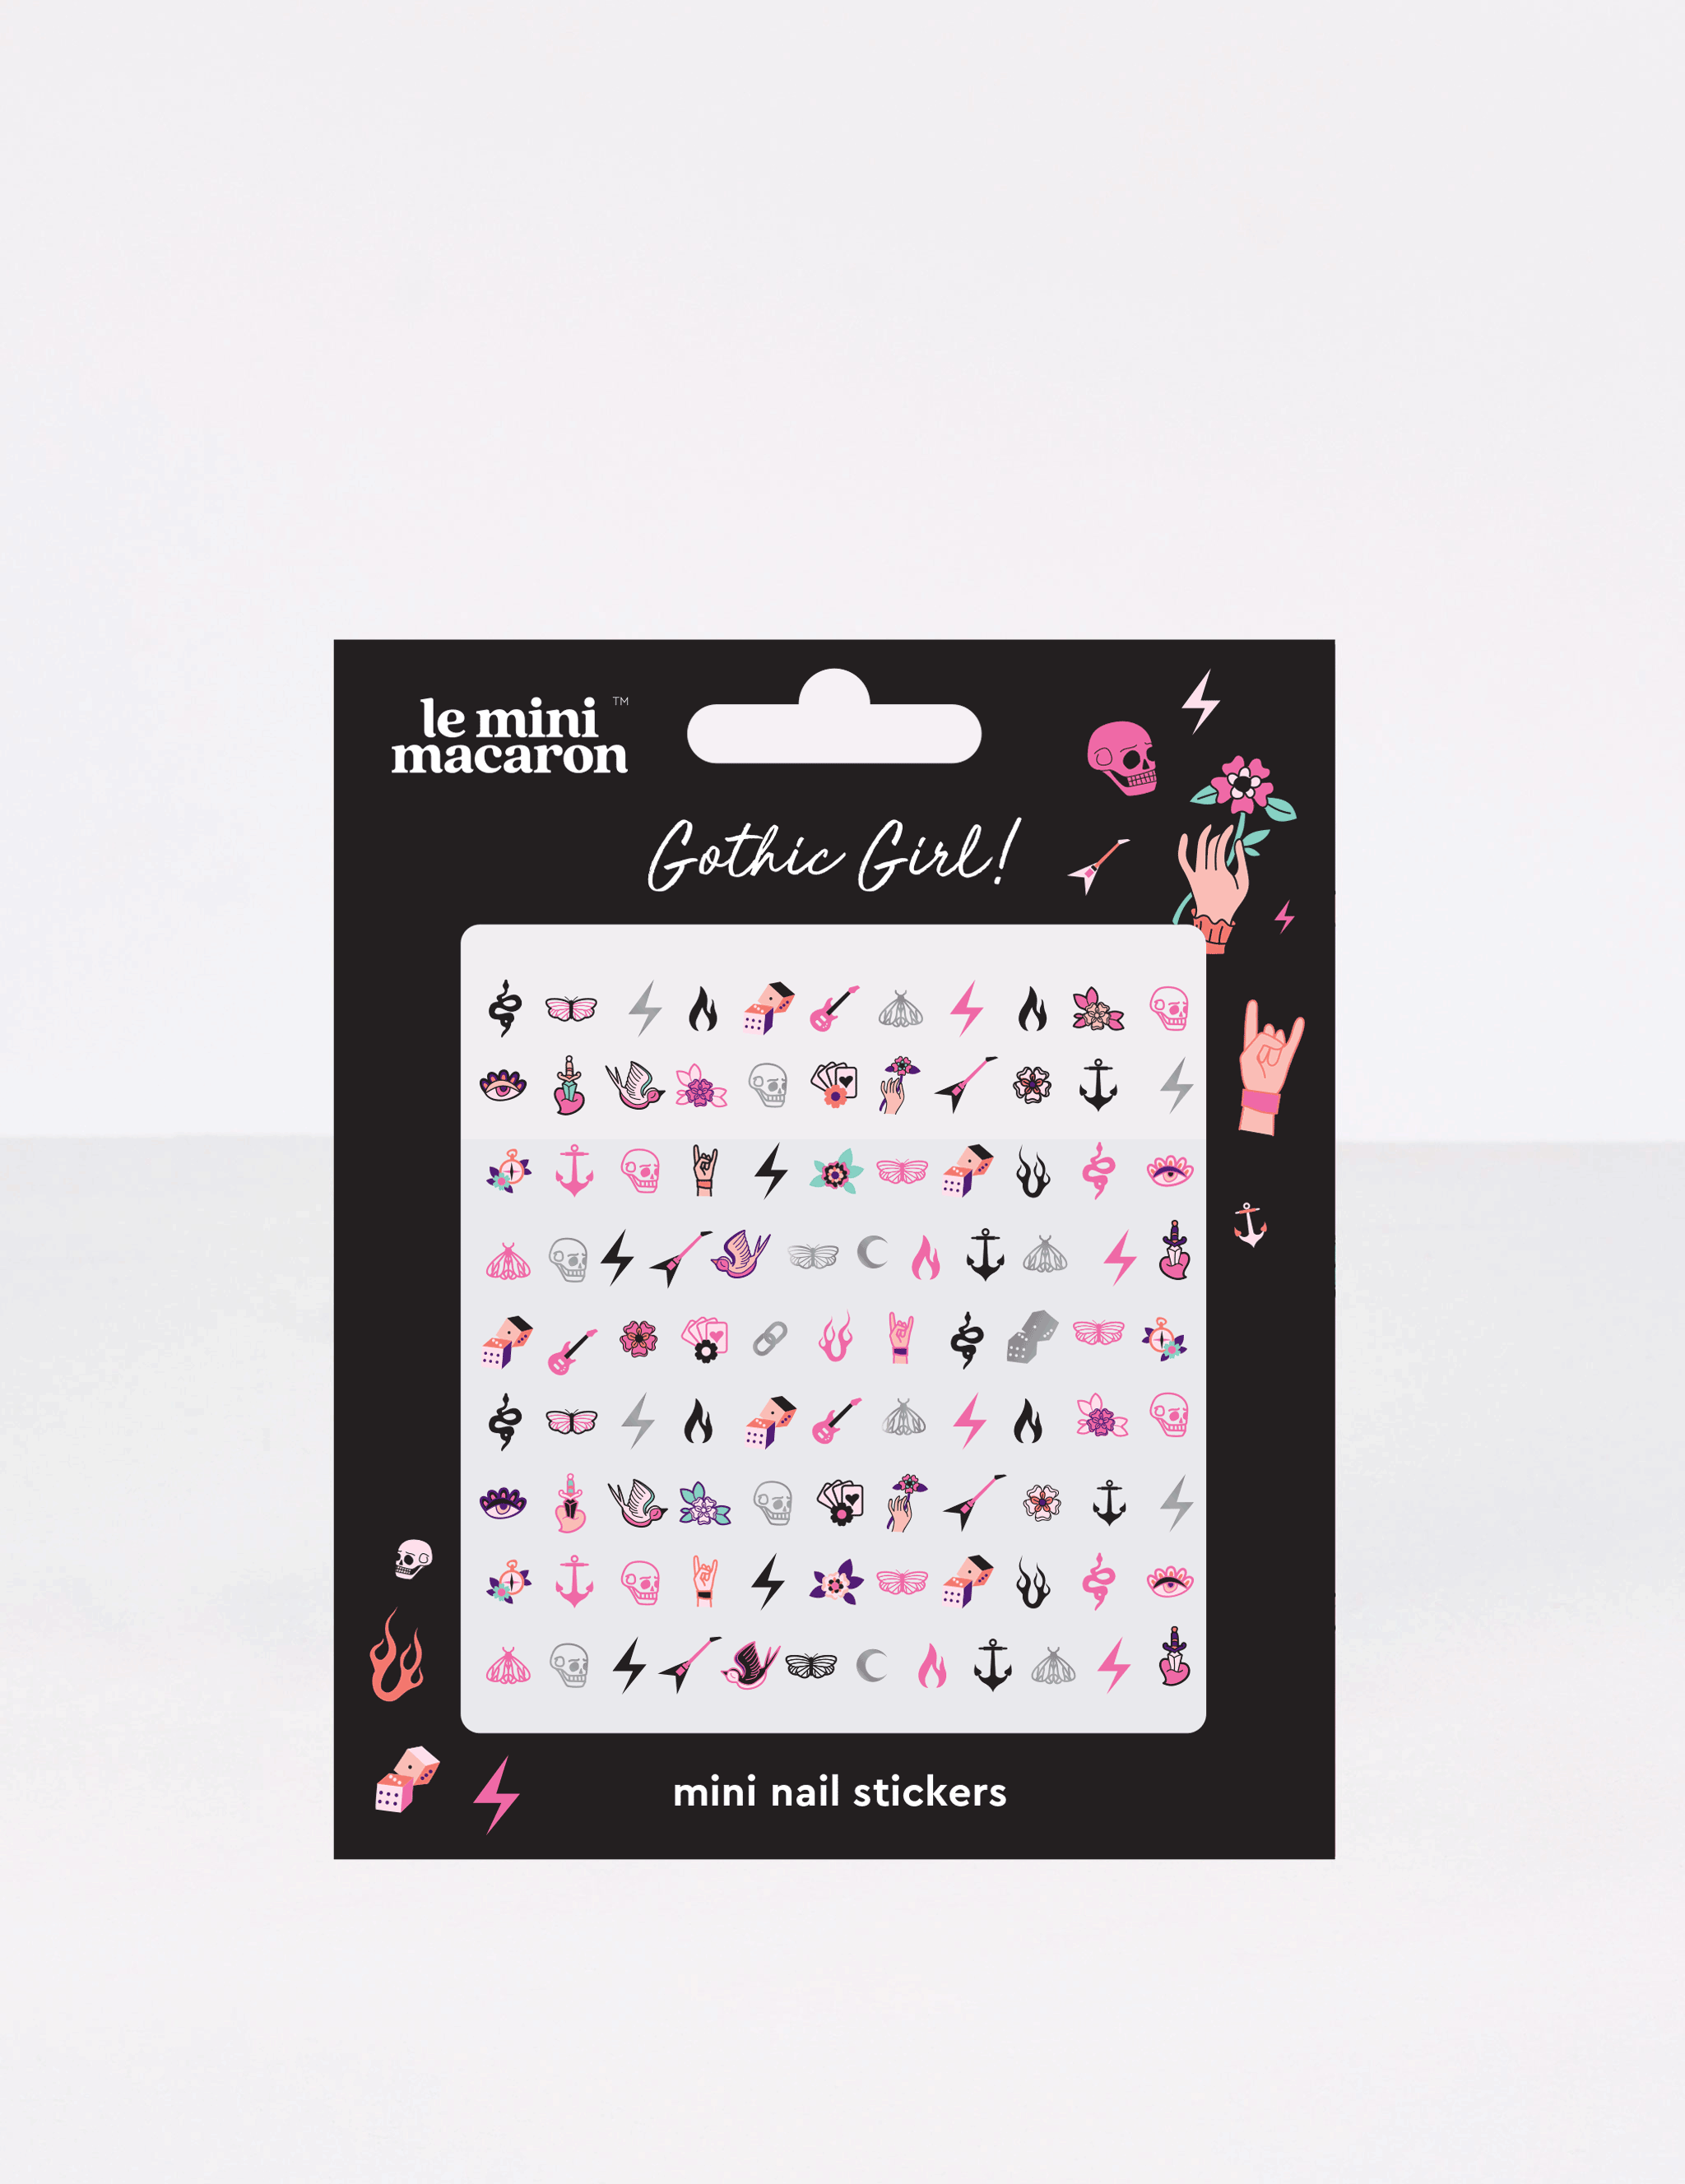 Gothic Girl - Mini Nail Stickers - Le Mini Macaron